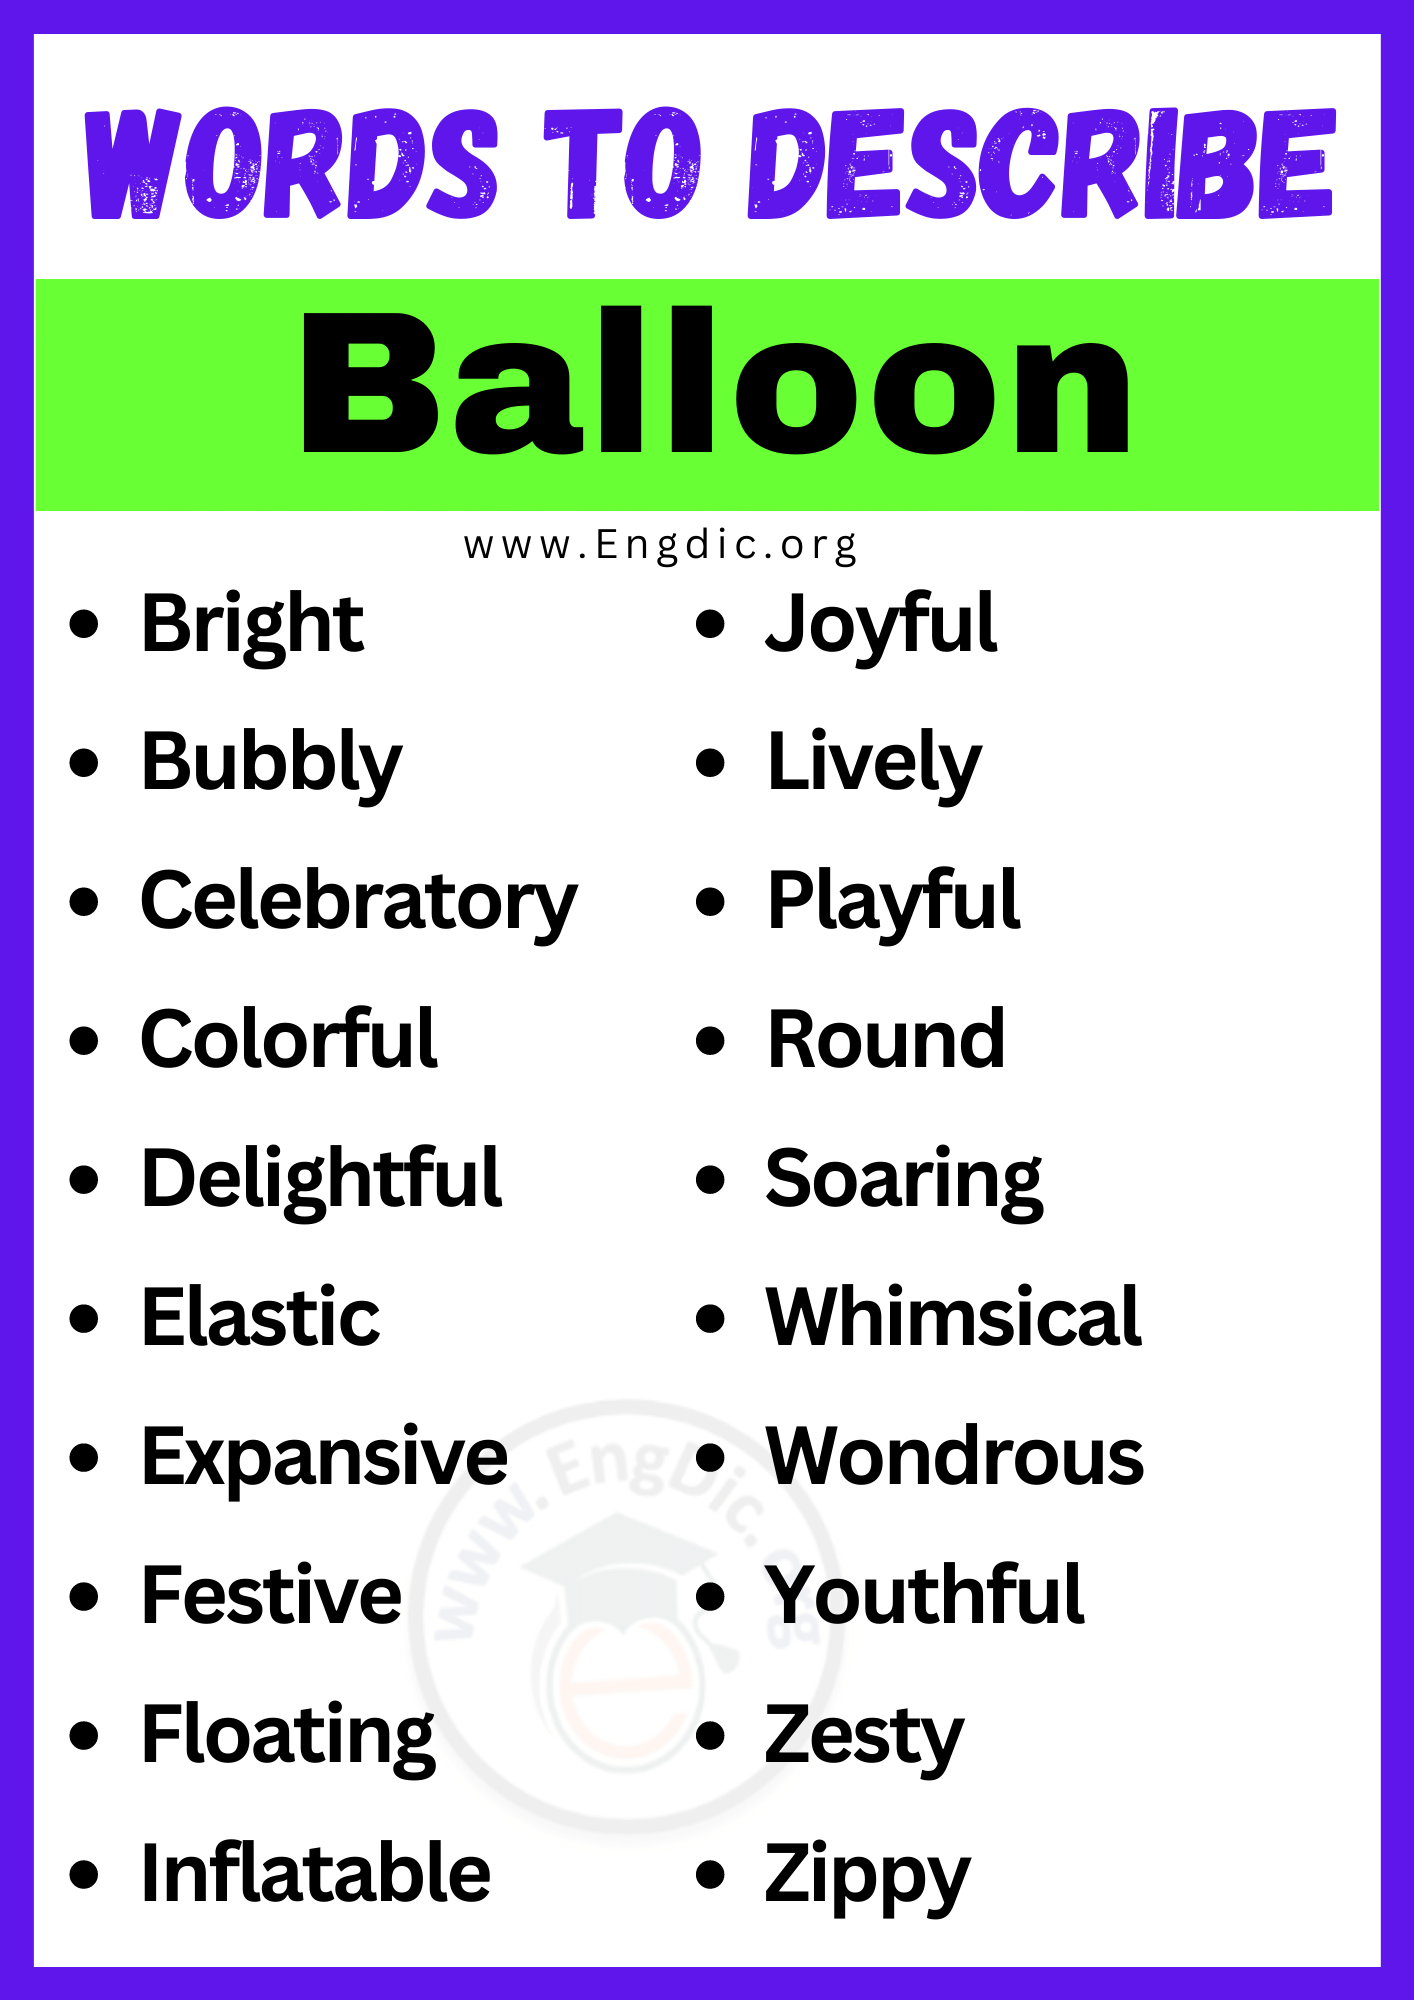 Words to Describe Balloon